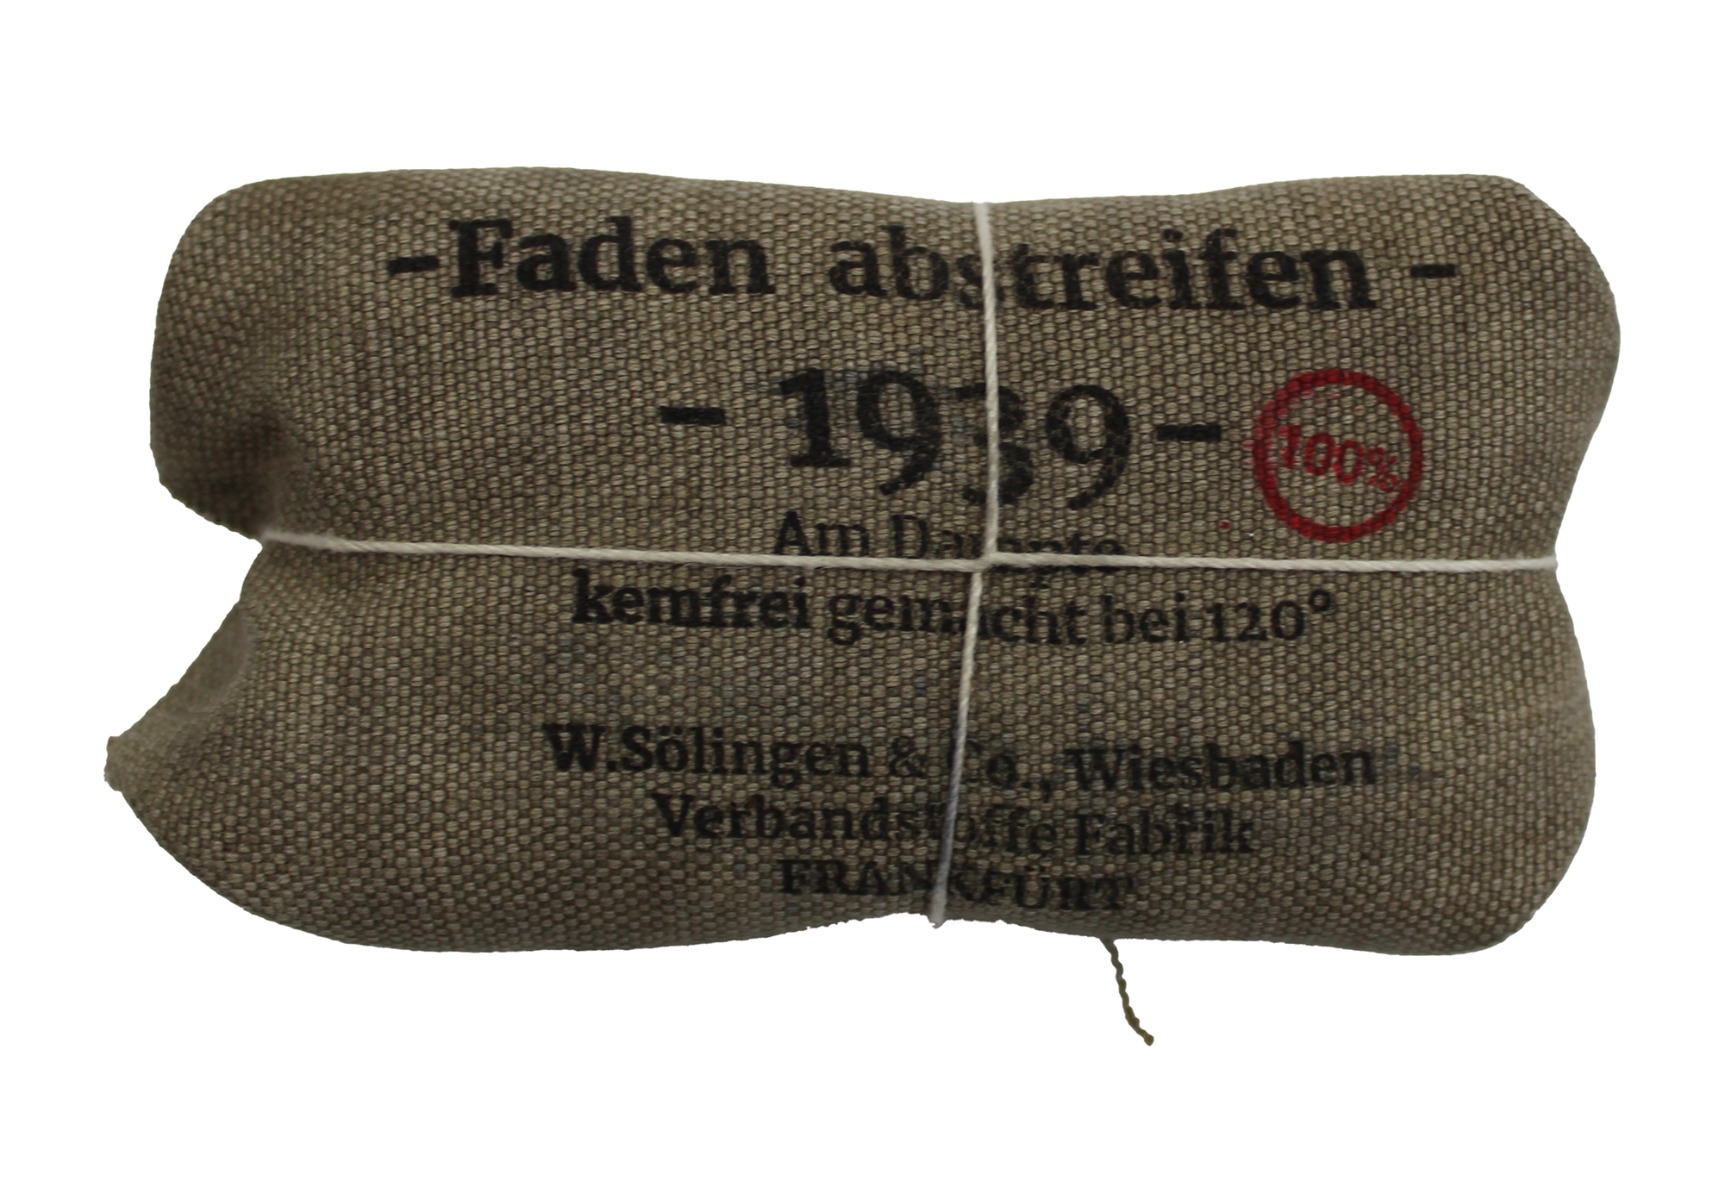 GERMAN WWII BANDAGE BY SOLIGEN & CO., IN WIESBADEN 